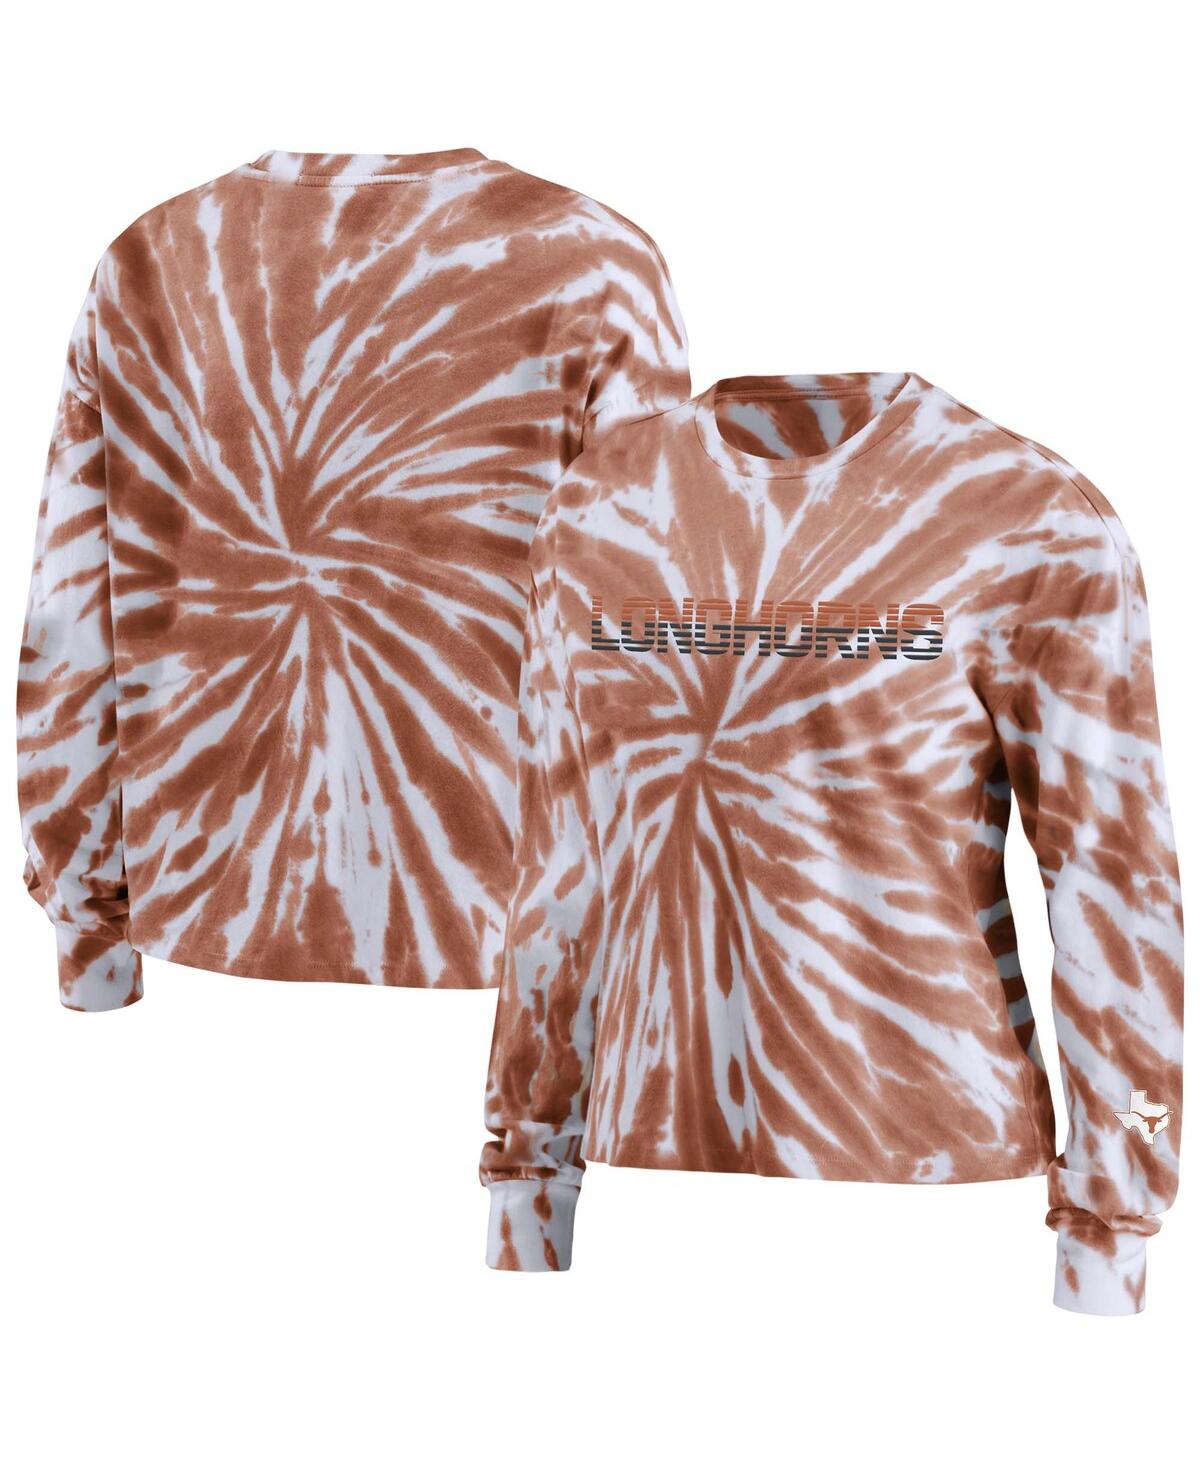 Shop Wear By Erin Andrews Women's  Texas Orange Texas Longhorns Tie-dye Long Sleeve T-shirt